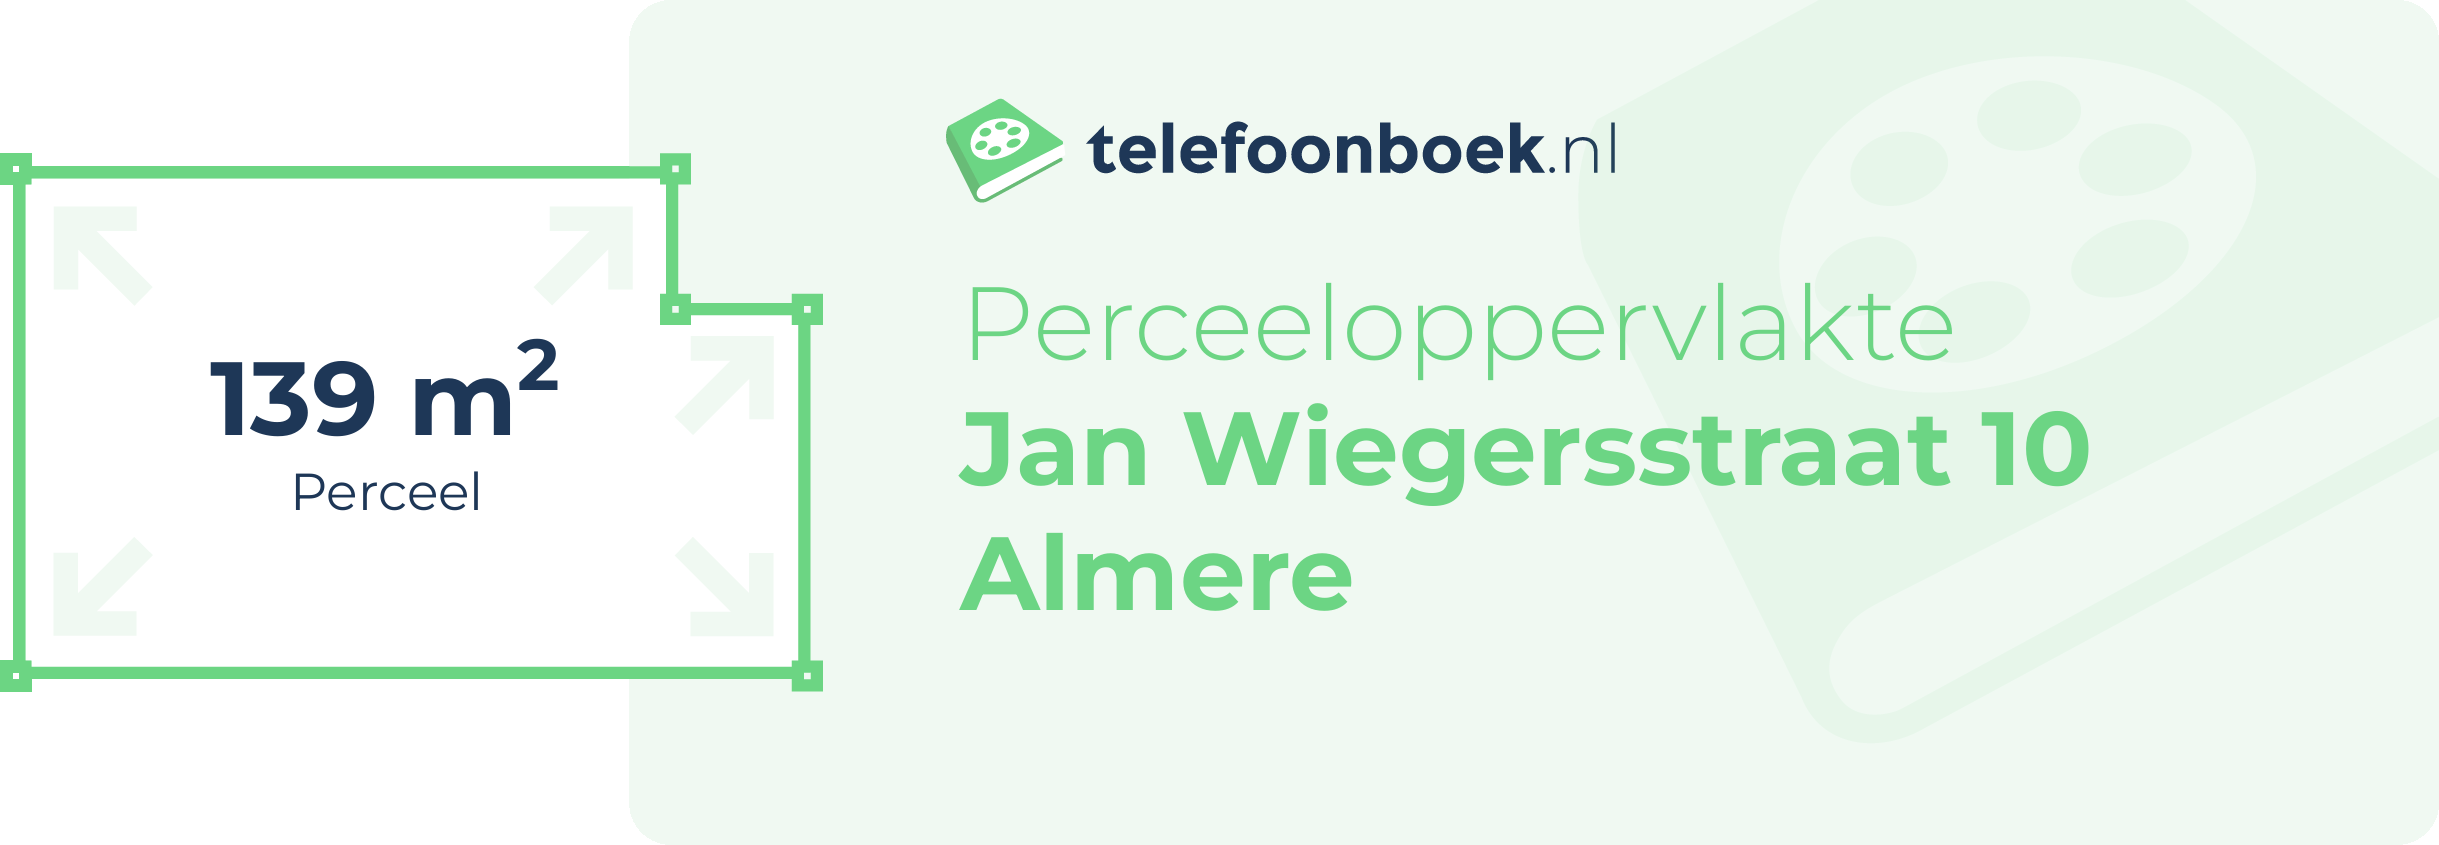 Perceeloppervlakte Jan Wiegersstraat 10 Almere